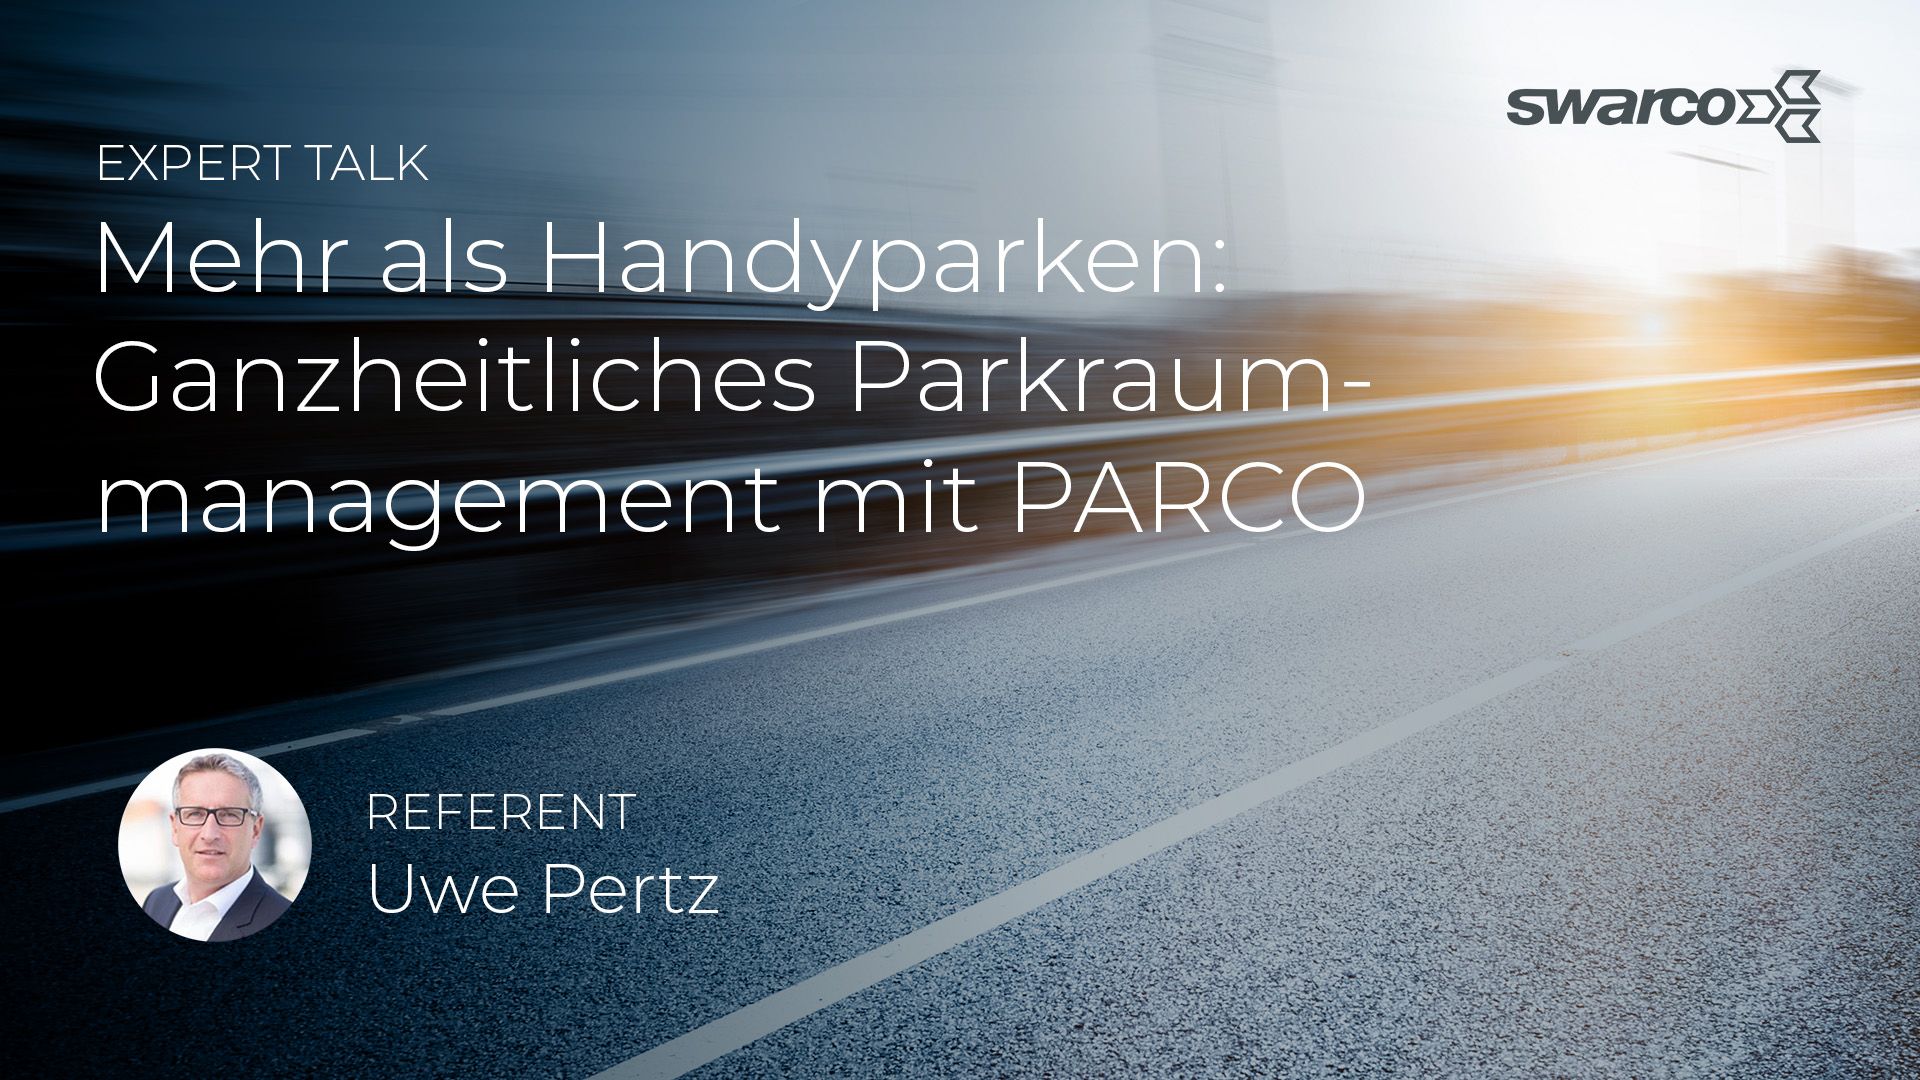 SWARCO Expert Talk Ganzheitliches Parkraummanagement Erweiterung dynamischer Parkleitsysteme durch die Mobilitätsapp PARCO